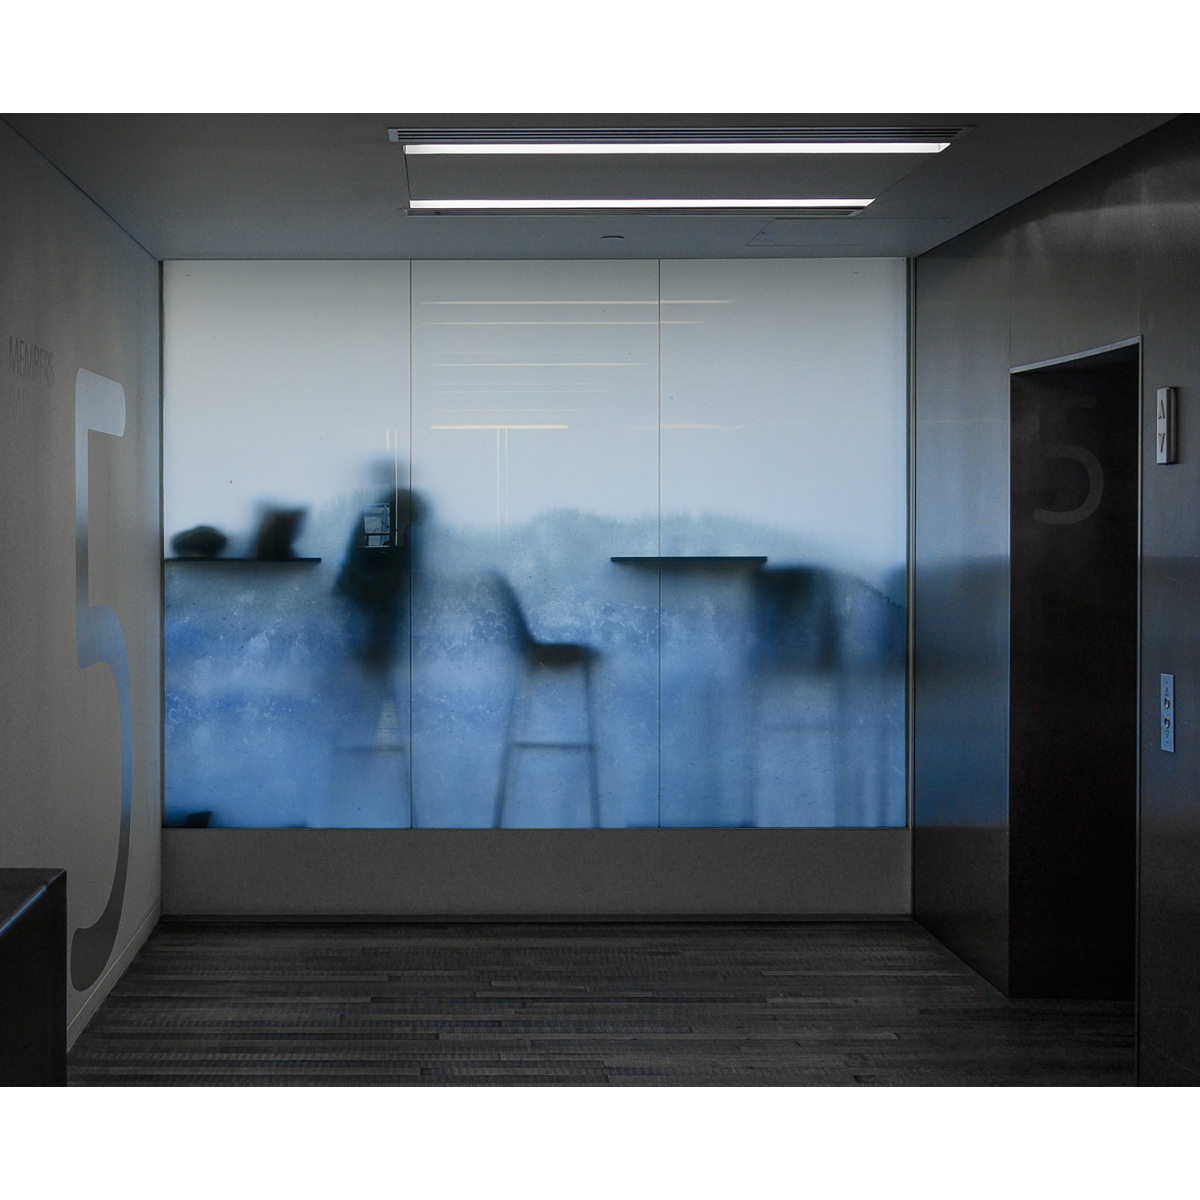 Film adhésif bleu ultra transparent pour décoration surface vitrée